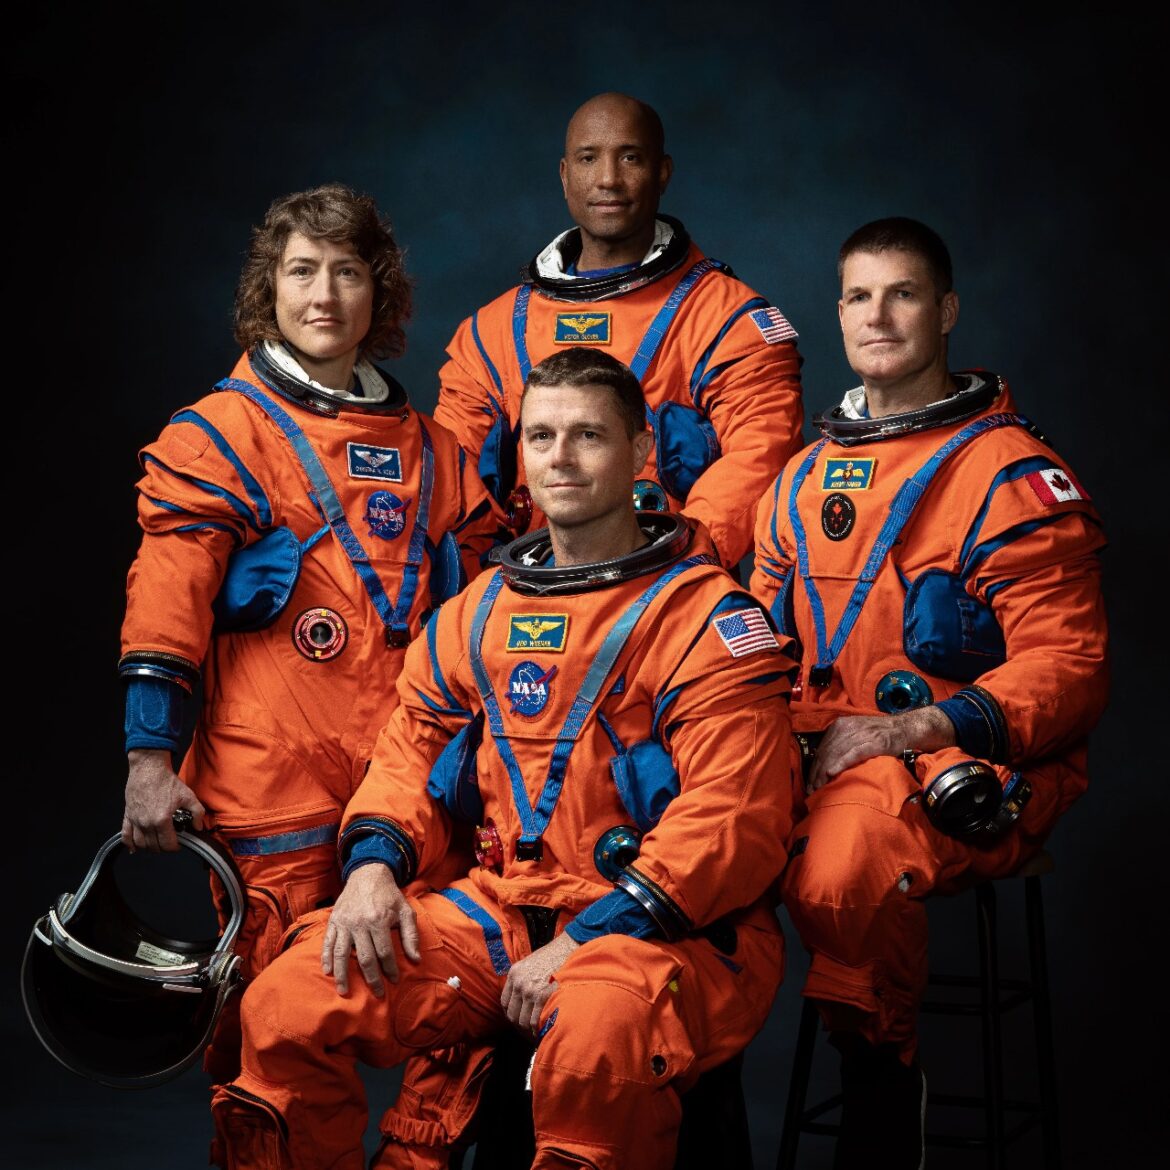 Descubra as diversas profissões na NASA: quais são as oportunidades de carreira e impacto na exploração espacial e tecnológica